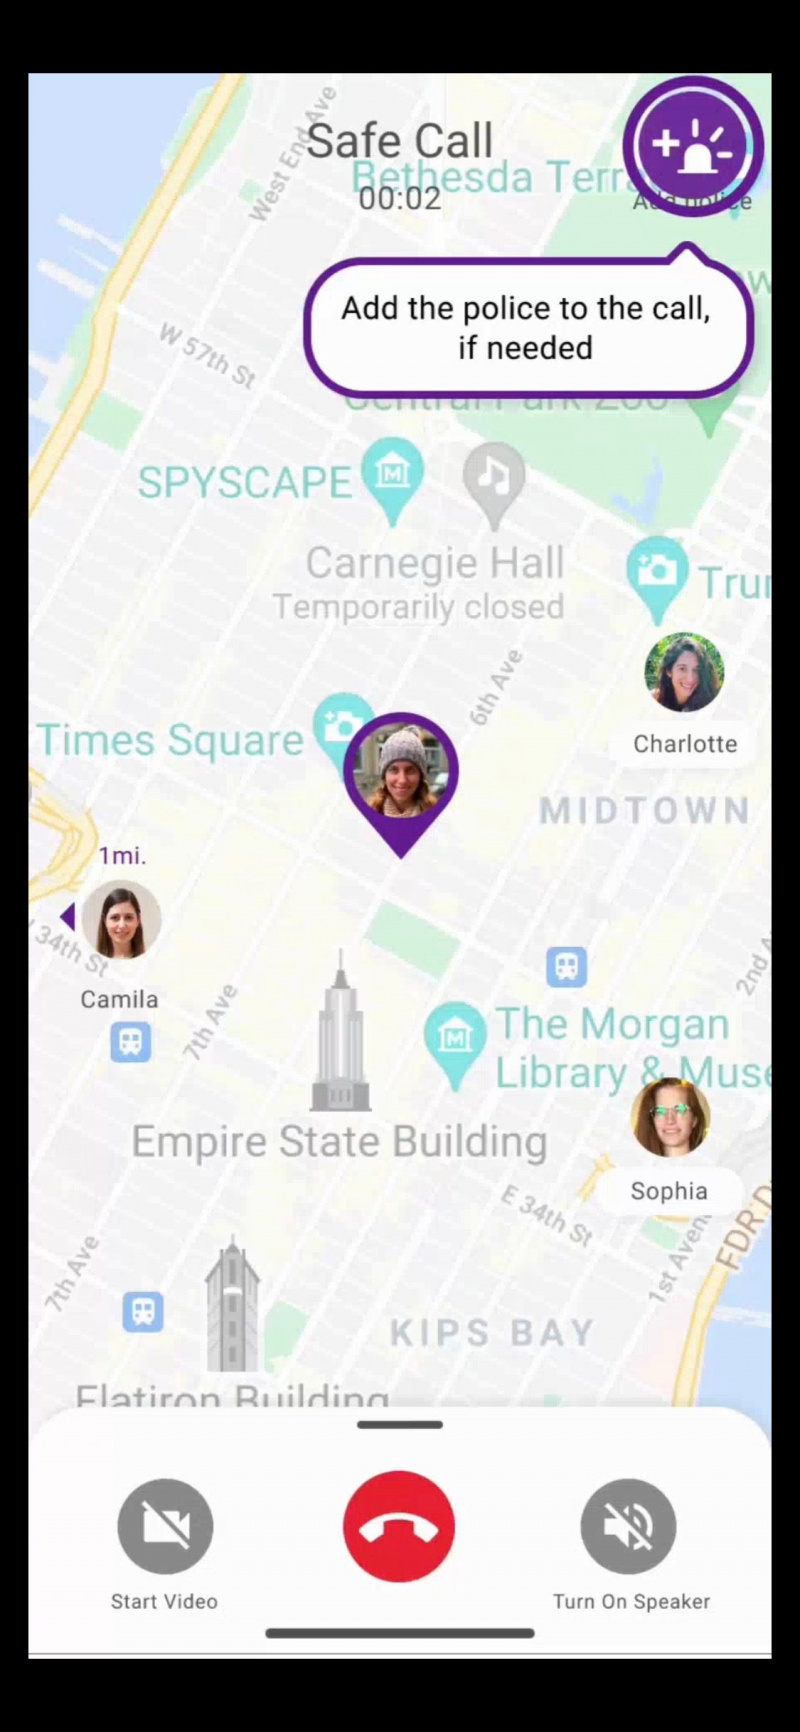   Captura de pantalla de la aplicación SafeUP que muestra la opción de agregar policías a llamadas seguras